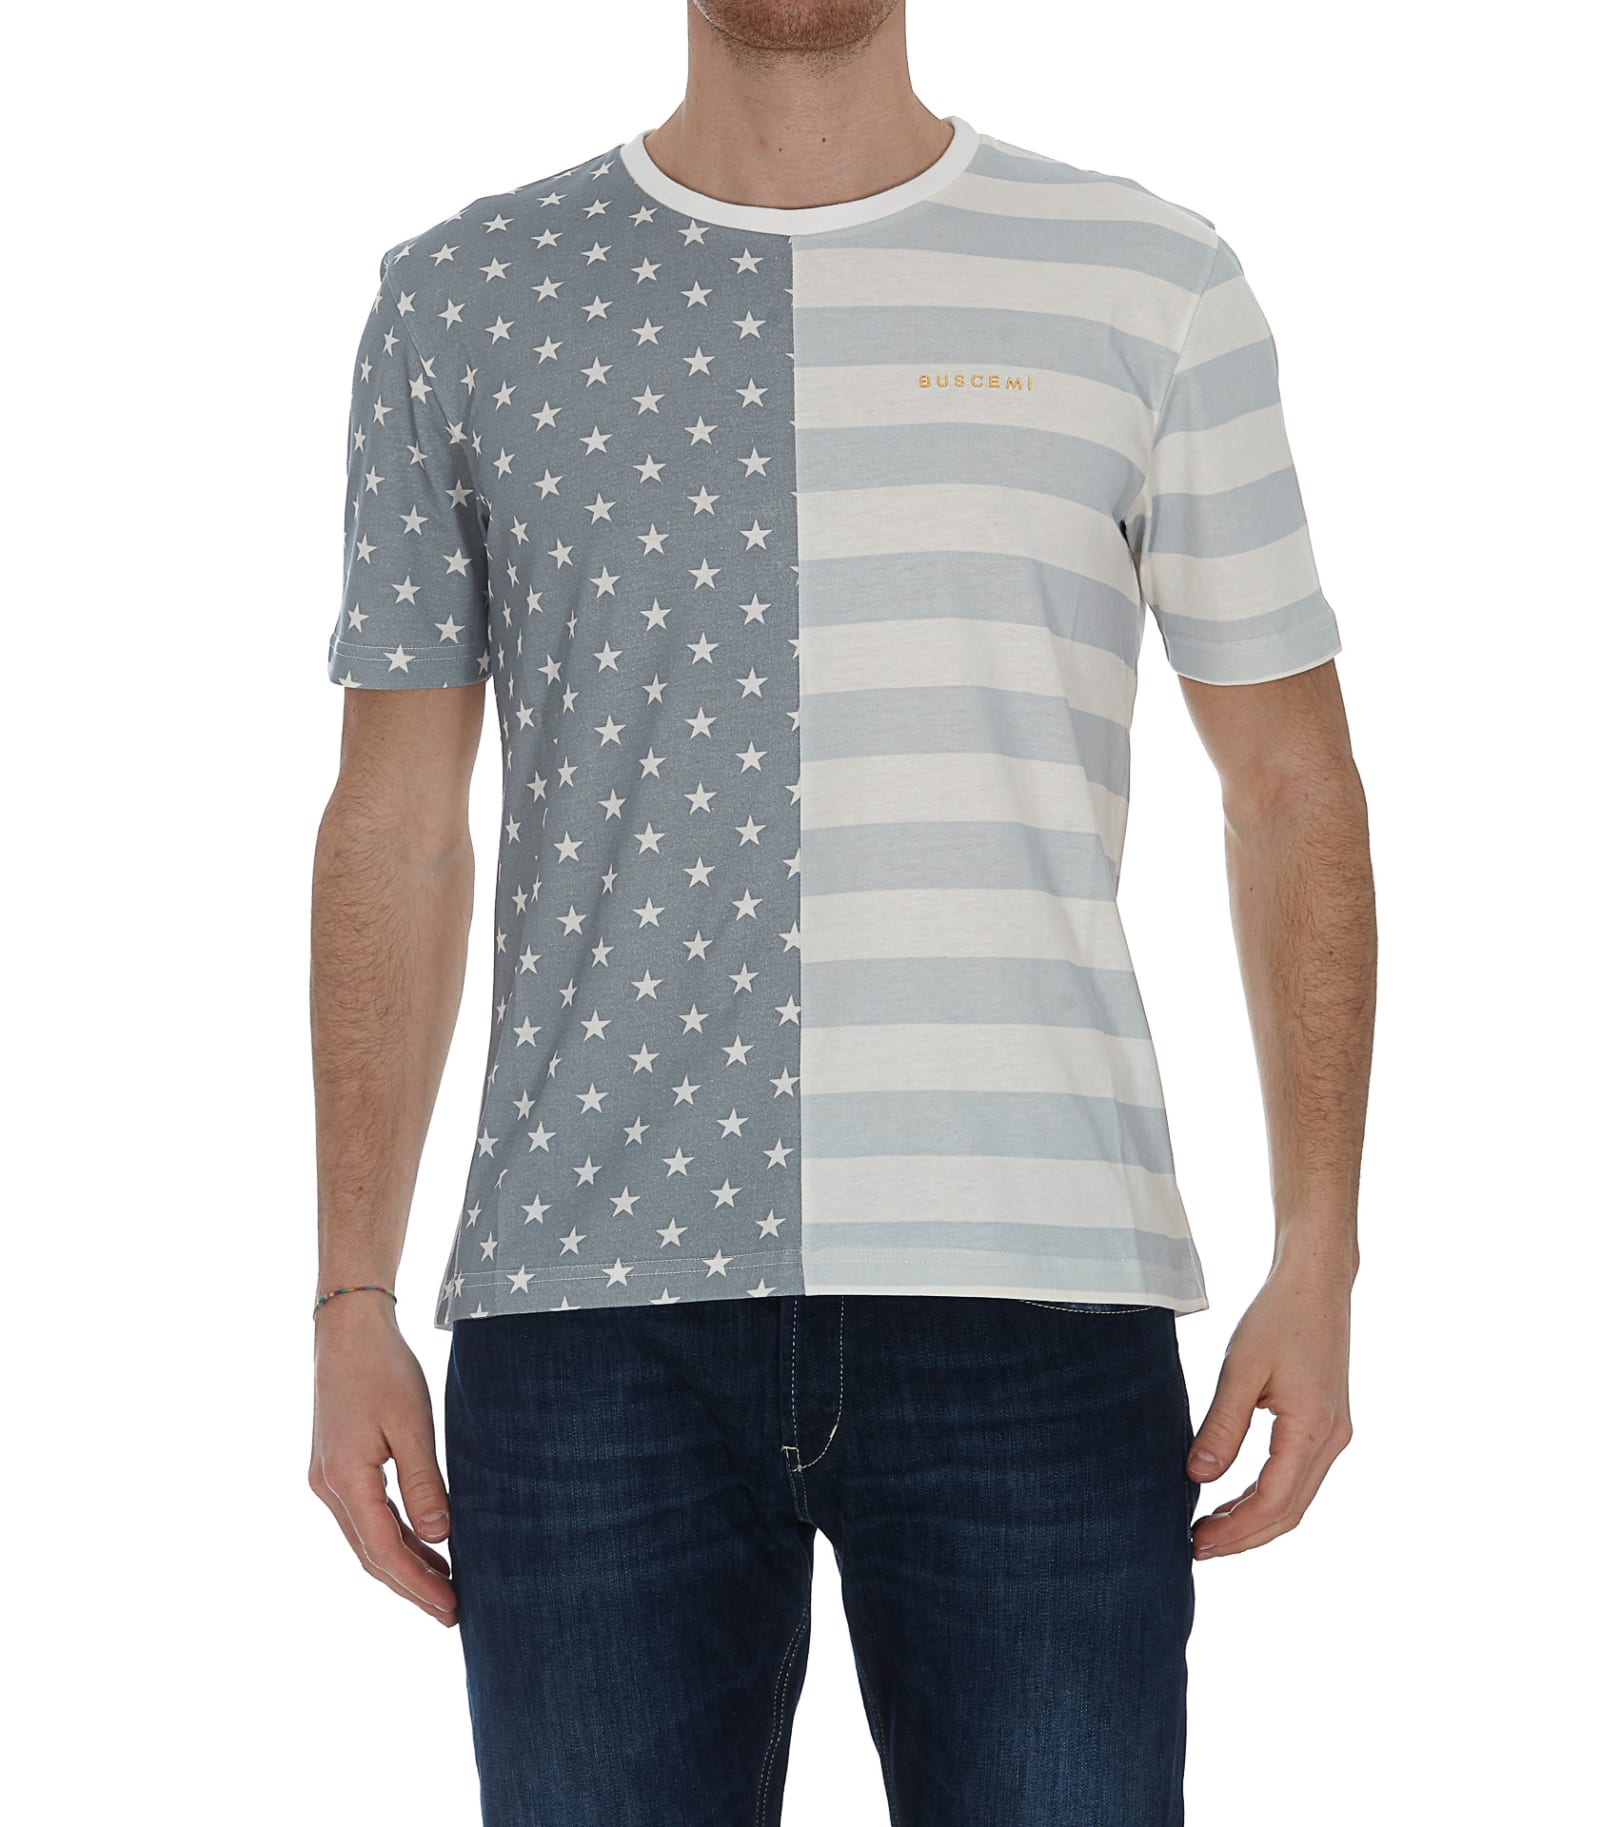 Buscemi Stars & stripes T-shirt